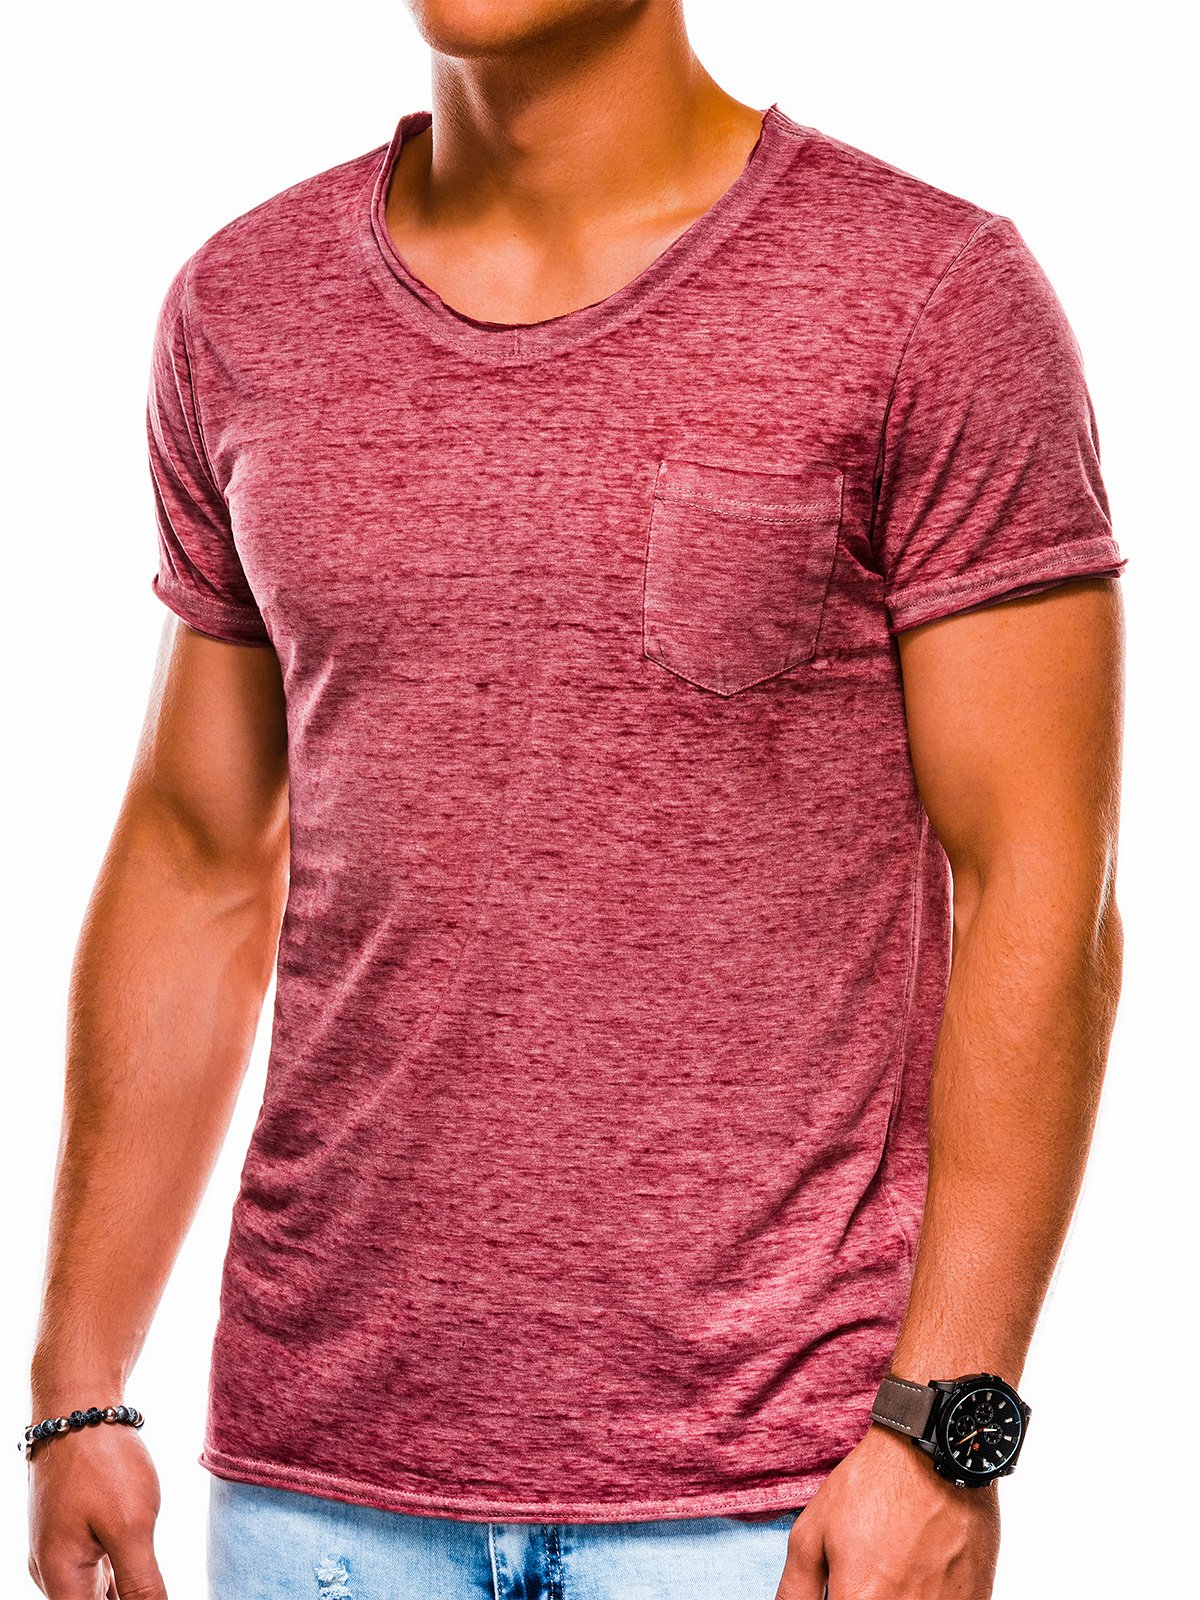 Men's plain t-shirt S1051 - dark red | MODONE wholesale - Clothing For Men